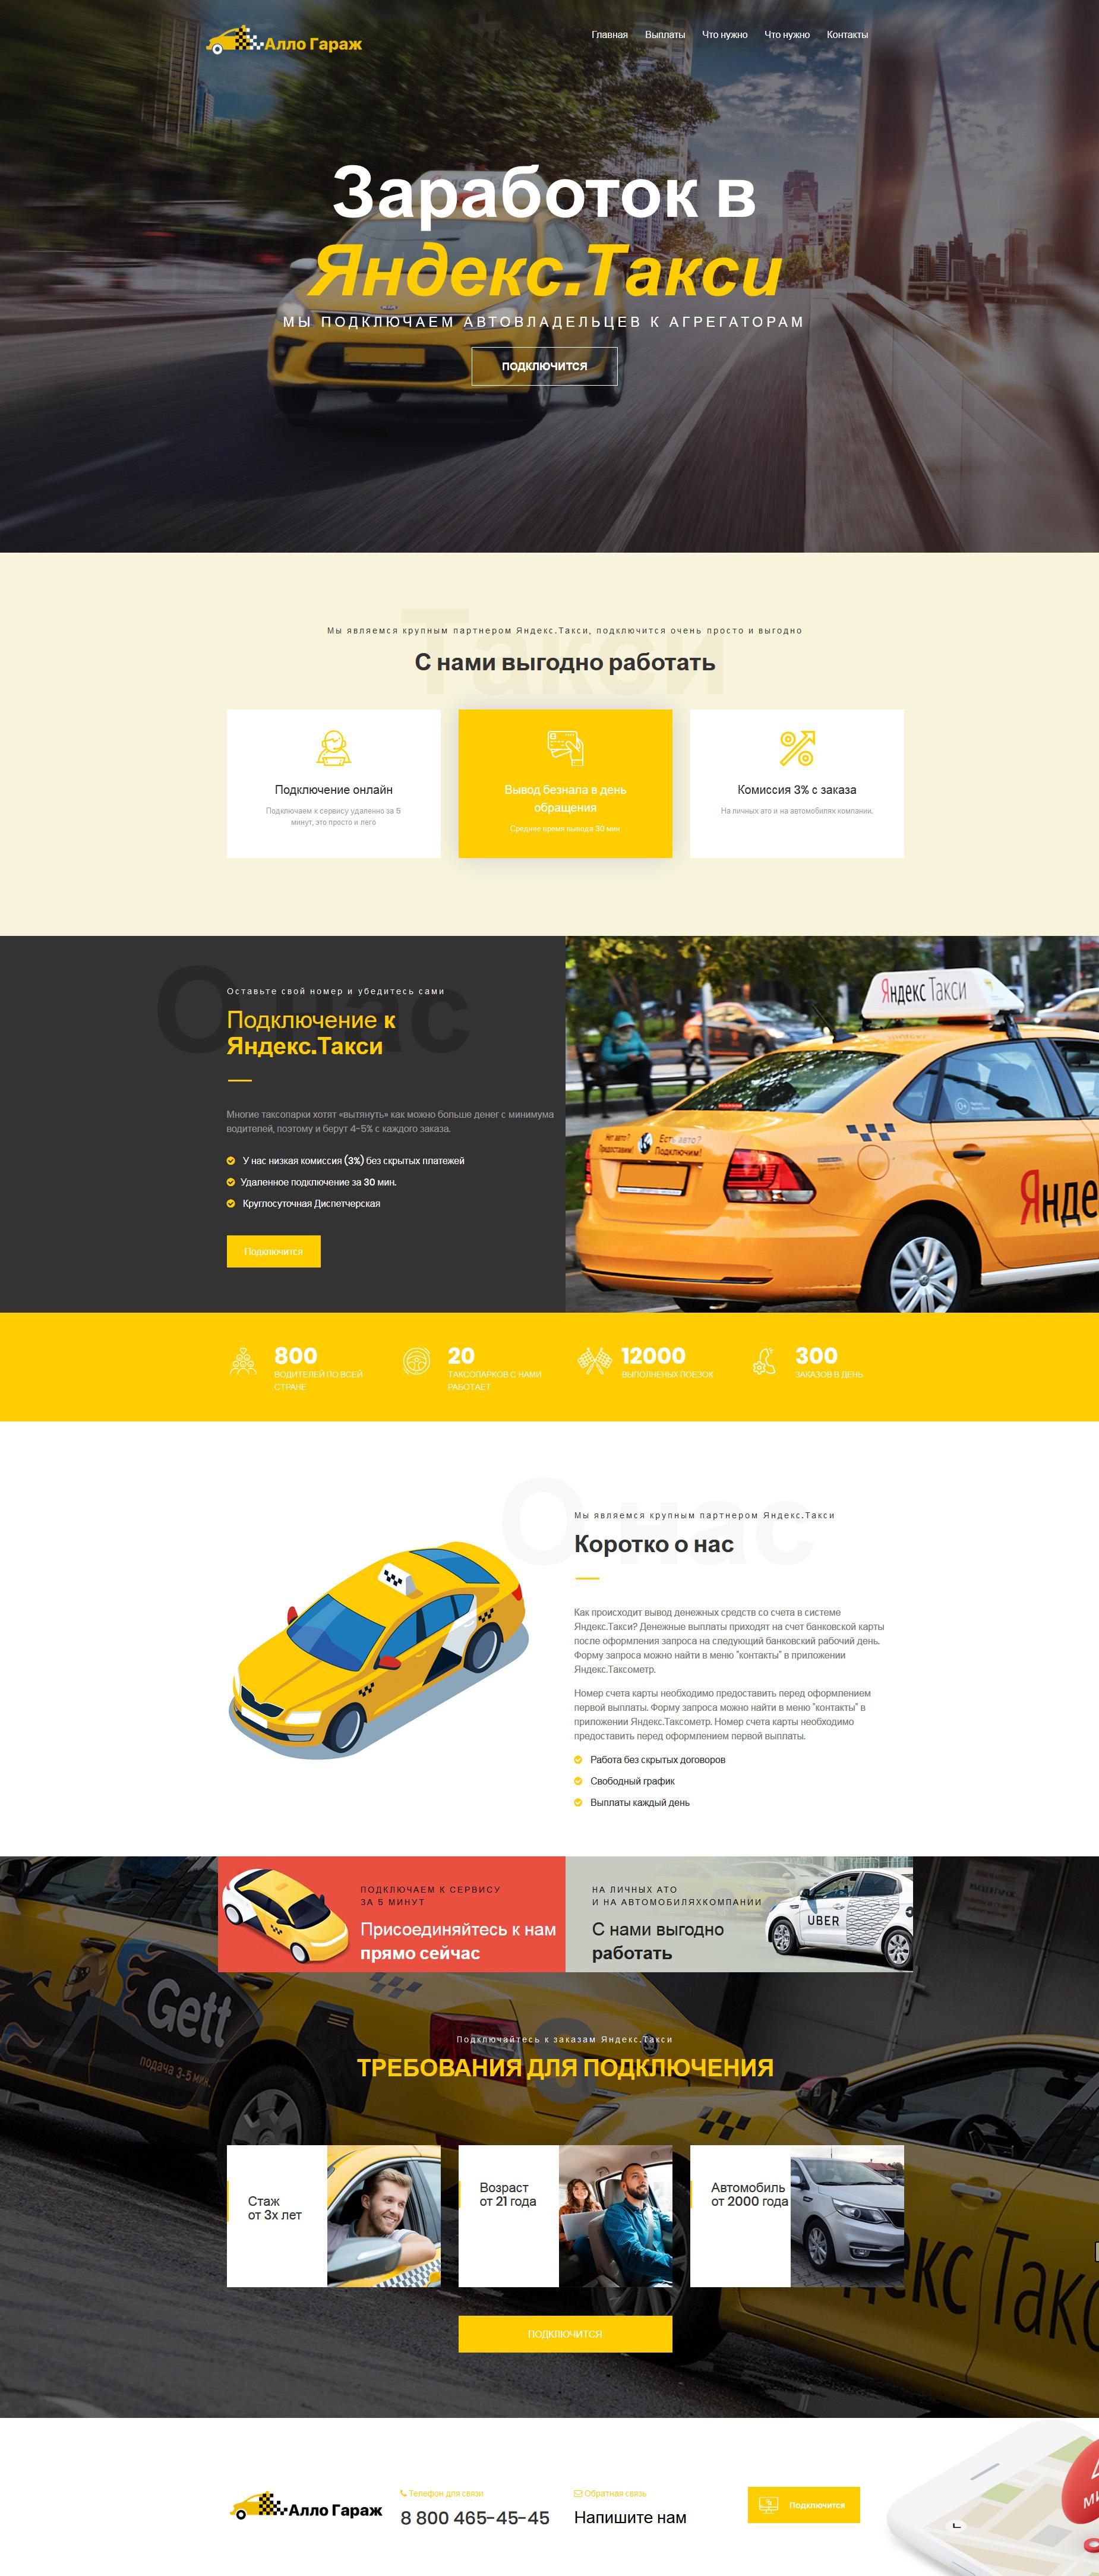 Разработка сайтов для бизнеса грузопассажирские перевозки, создание сайтов для таксистов